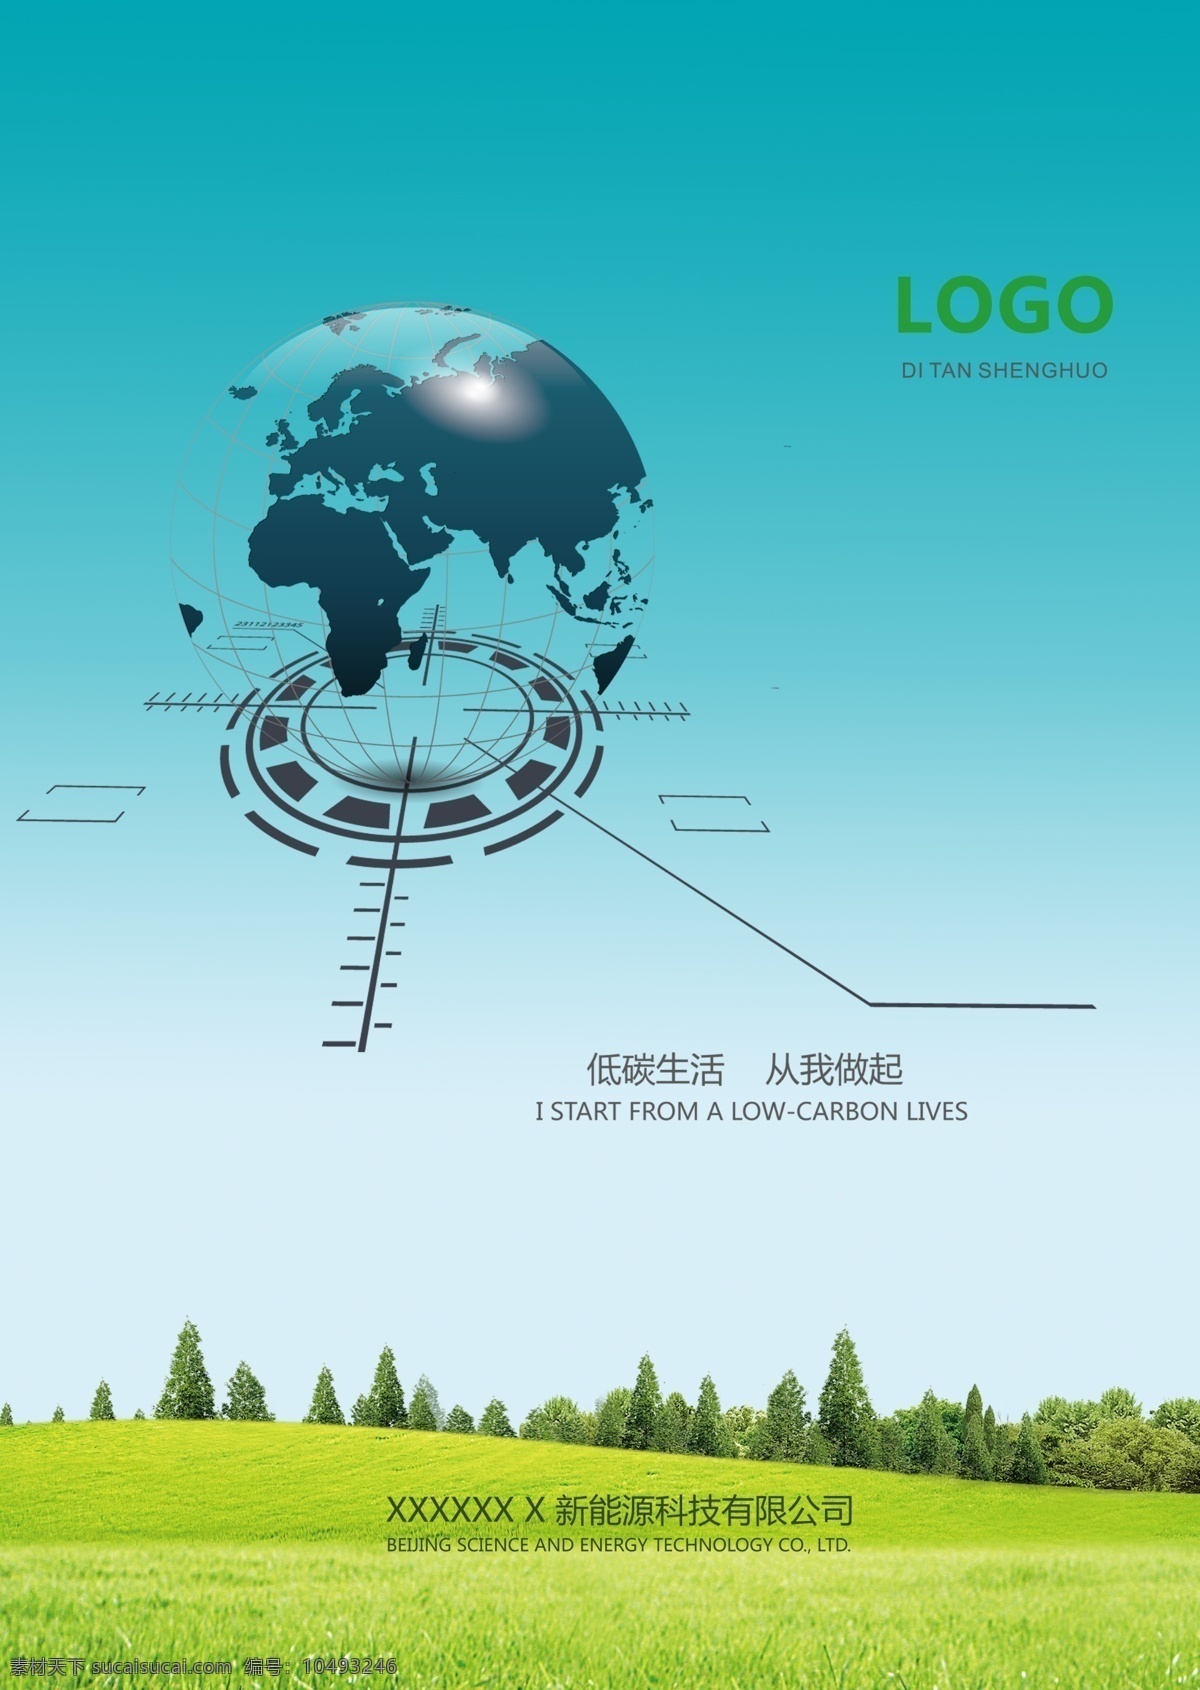 绿色环保 地球 绿色 环保 公司 低碳生活 logo 草地 树 展板模板